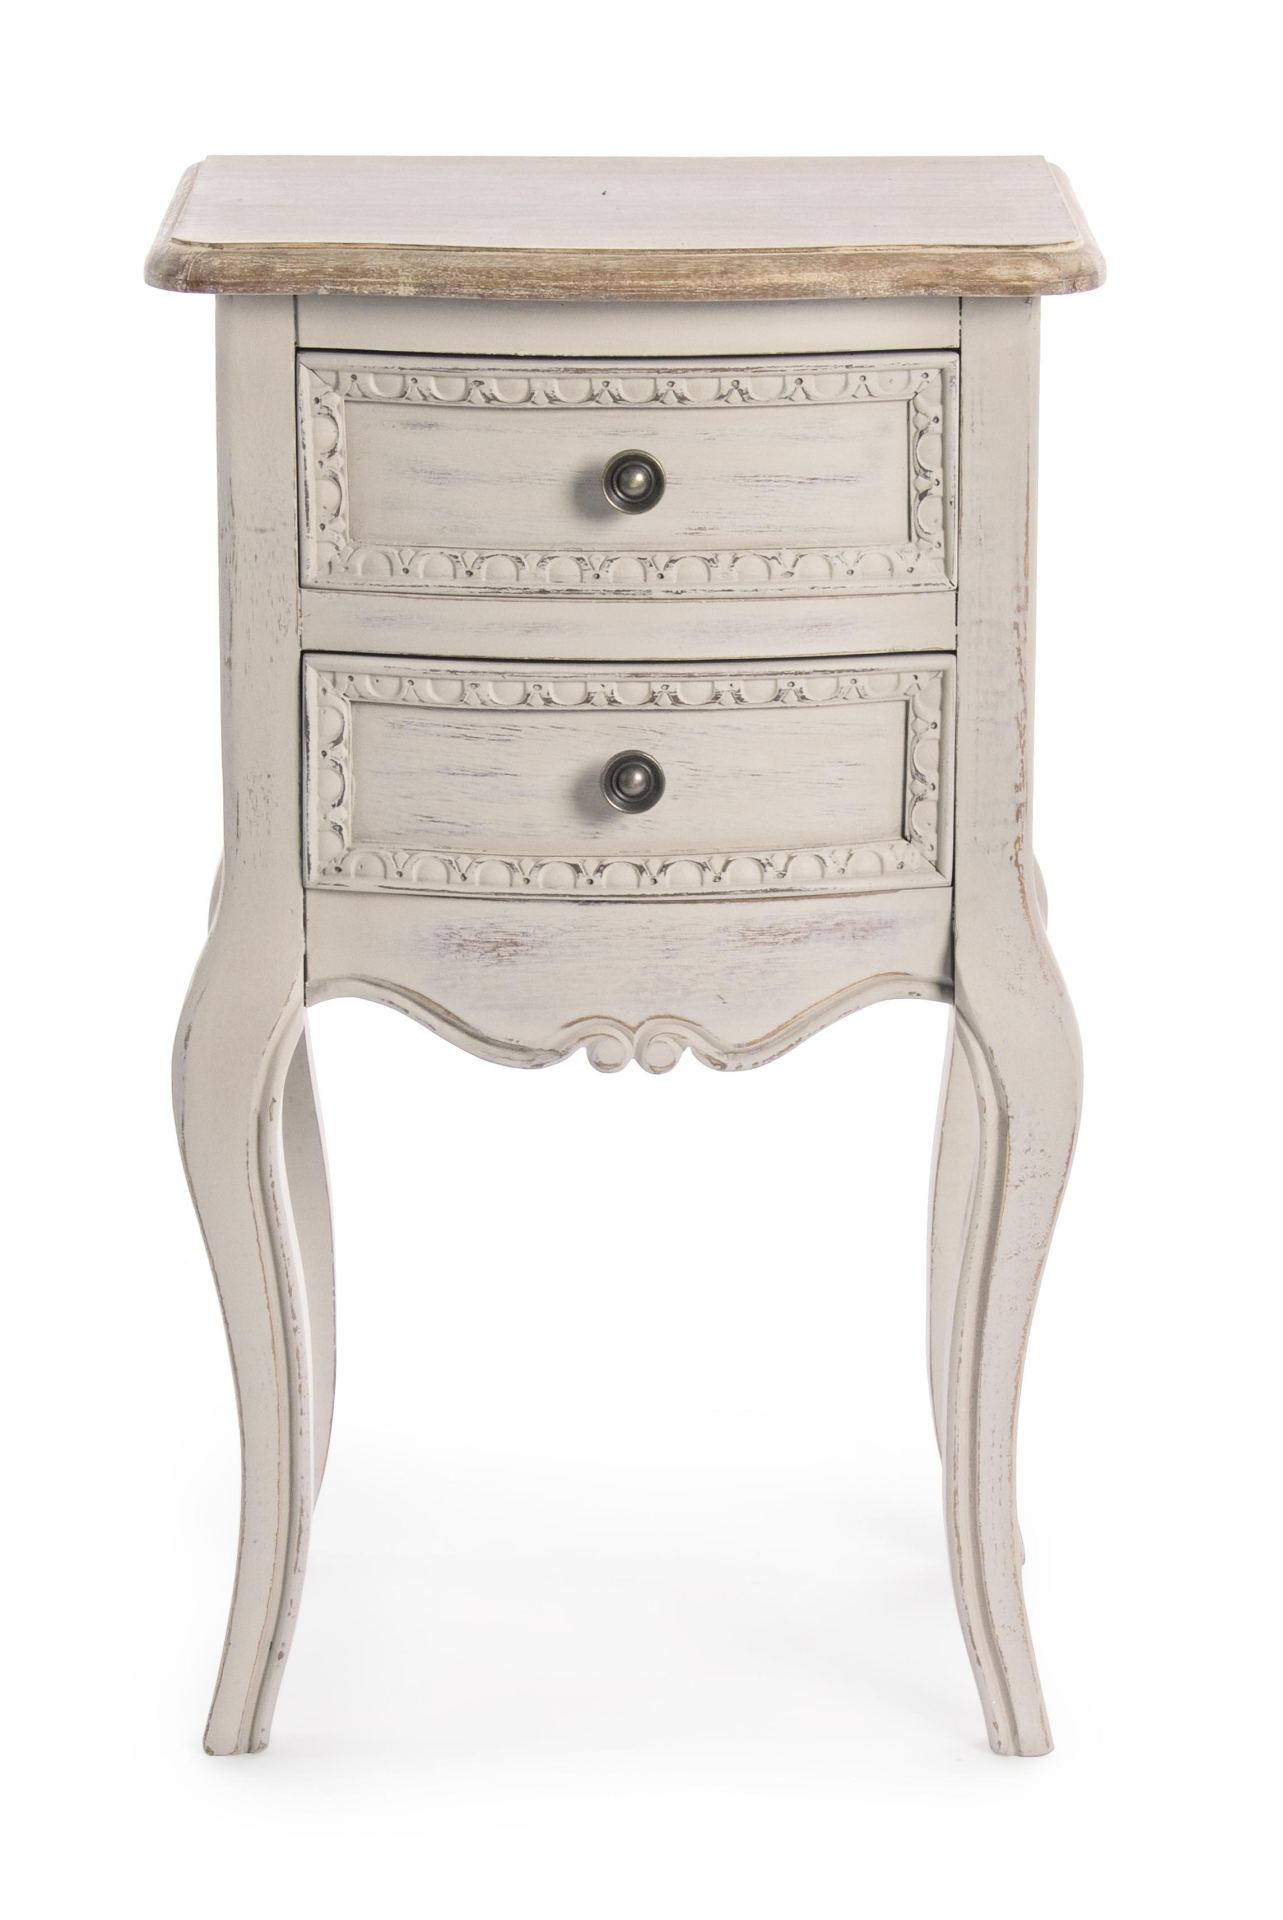 Der Nachttisch Clarissa überzeugt mit seinem klassischen Design. Gefertigt wurde er aus Paulowniaholz, welches einen grauen Farbton besitzt. Das Gestell ist auch aus Paulowniaholz. Der Nachttisch verfügt über zwei Schubladen. Die Breite beträgt 40 cm.